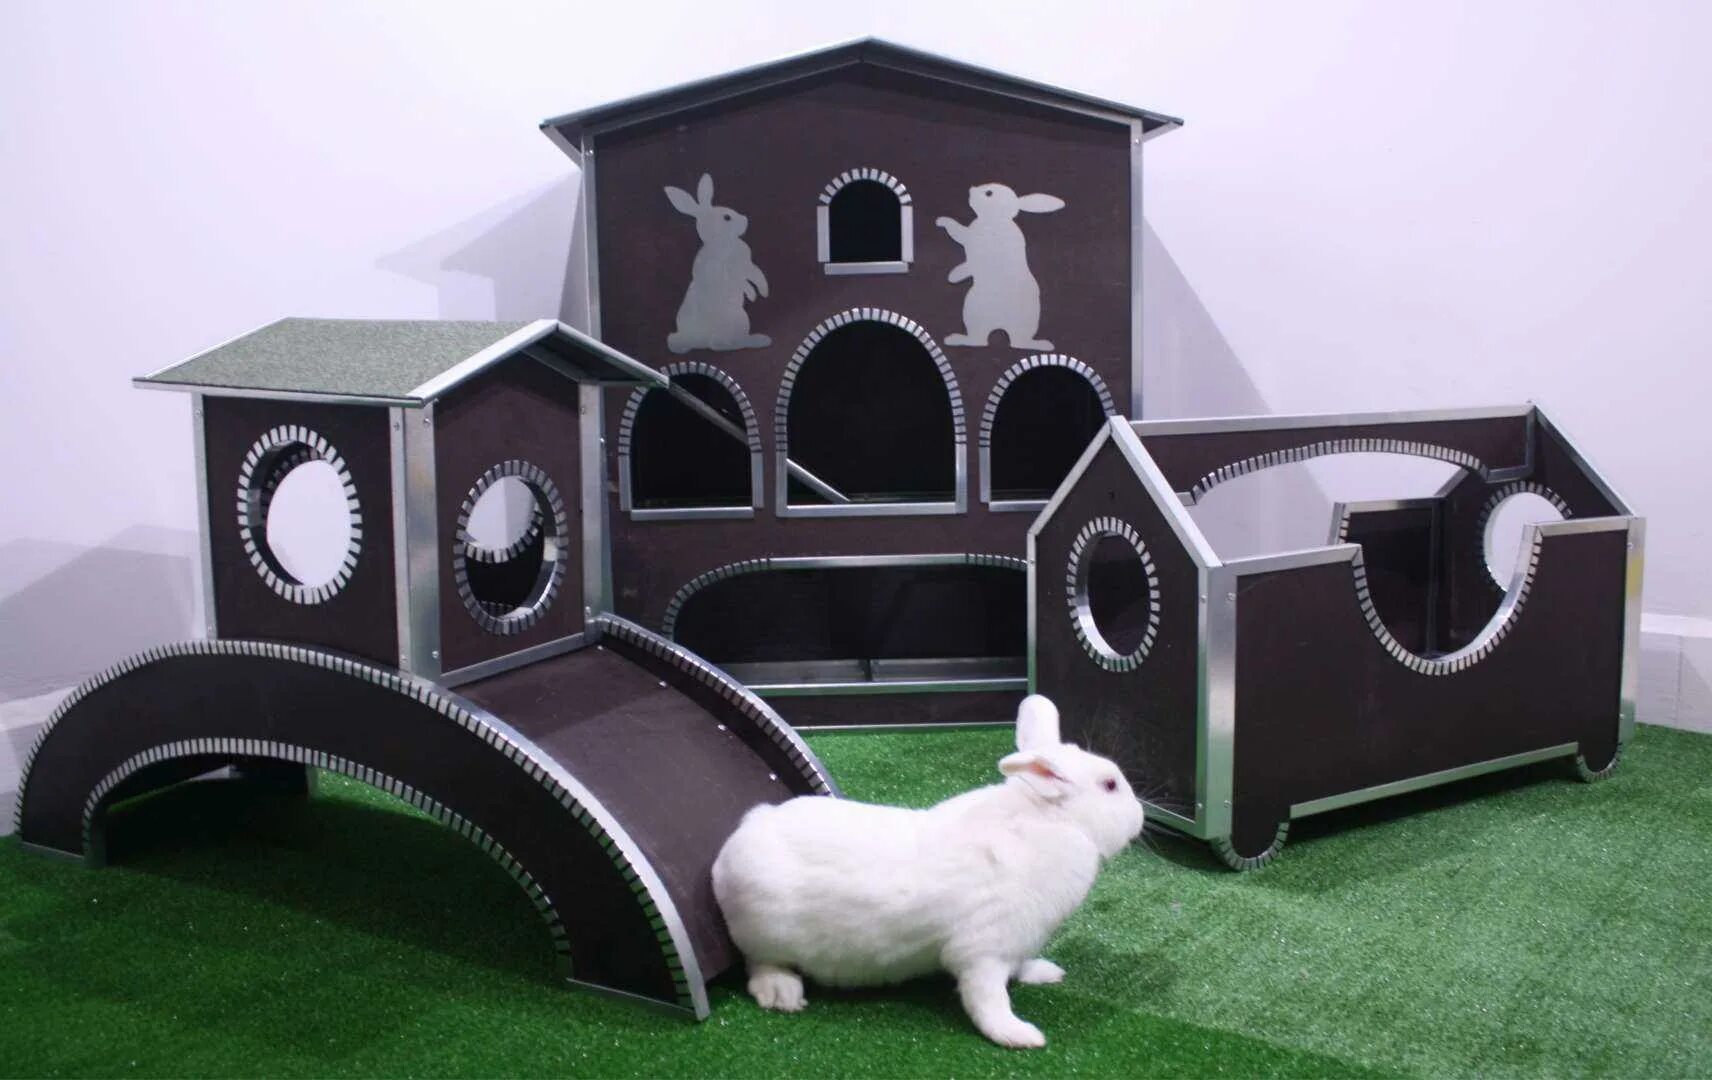 Замок для клетки. Домик для кролика декоративного. Картонный домик для кролика. Домик для карликового кролика. Замок для кролика.